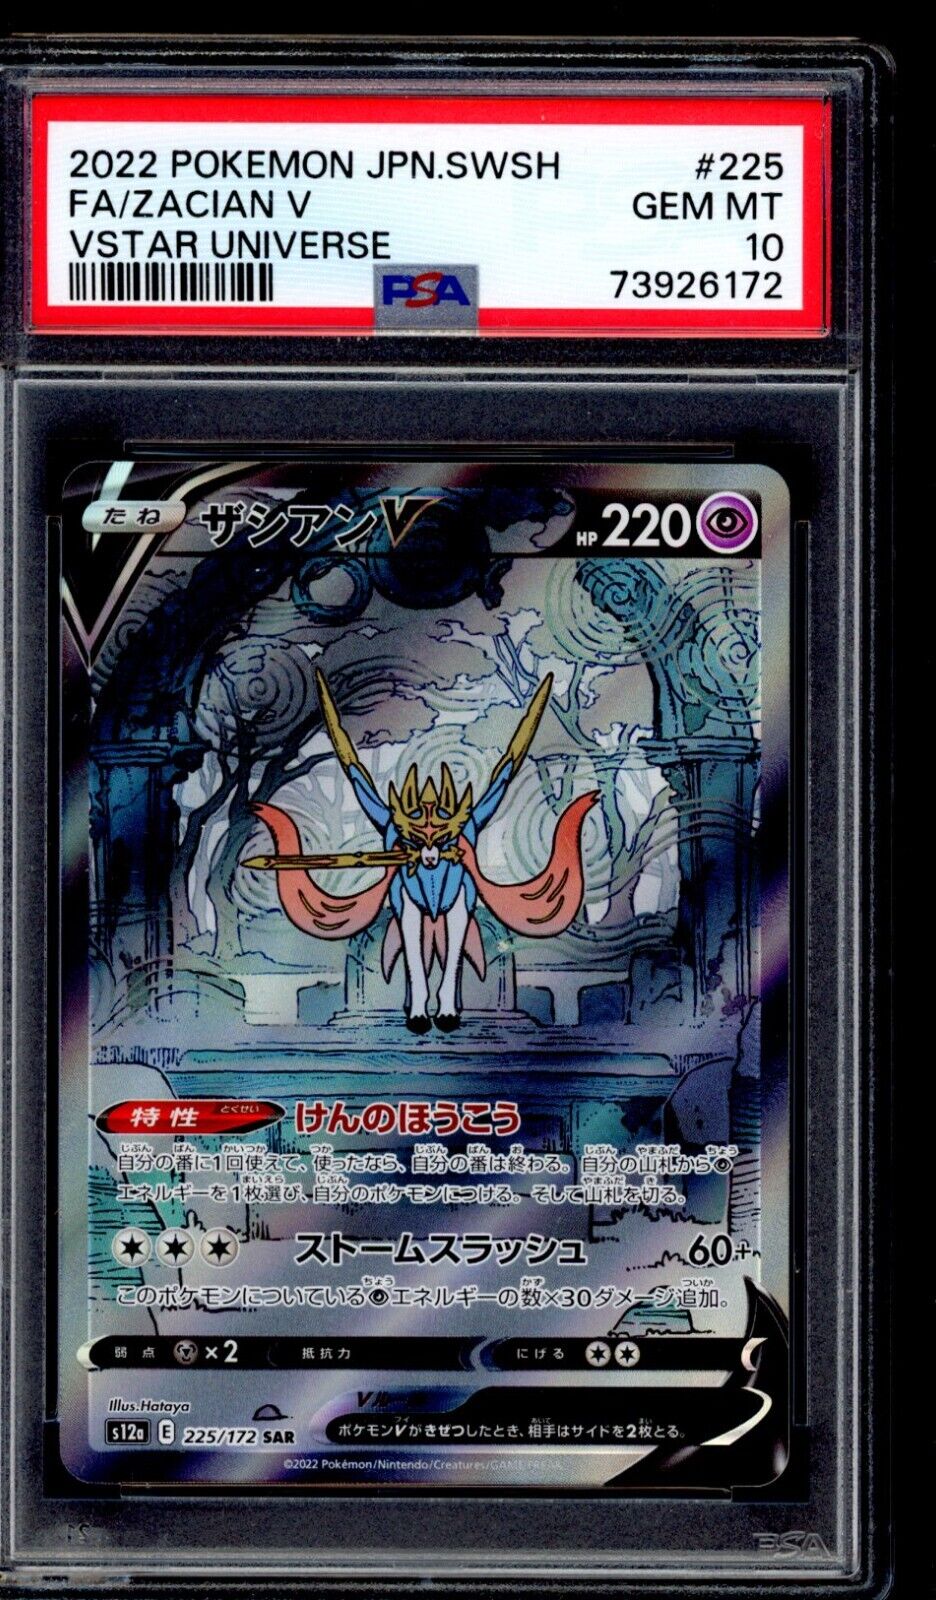 PSA 10 Zacian V 2022 Pokemon Card s12a 225/172 Vstar Universe